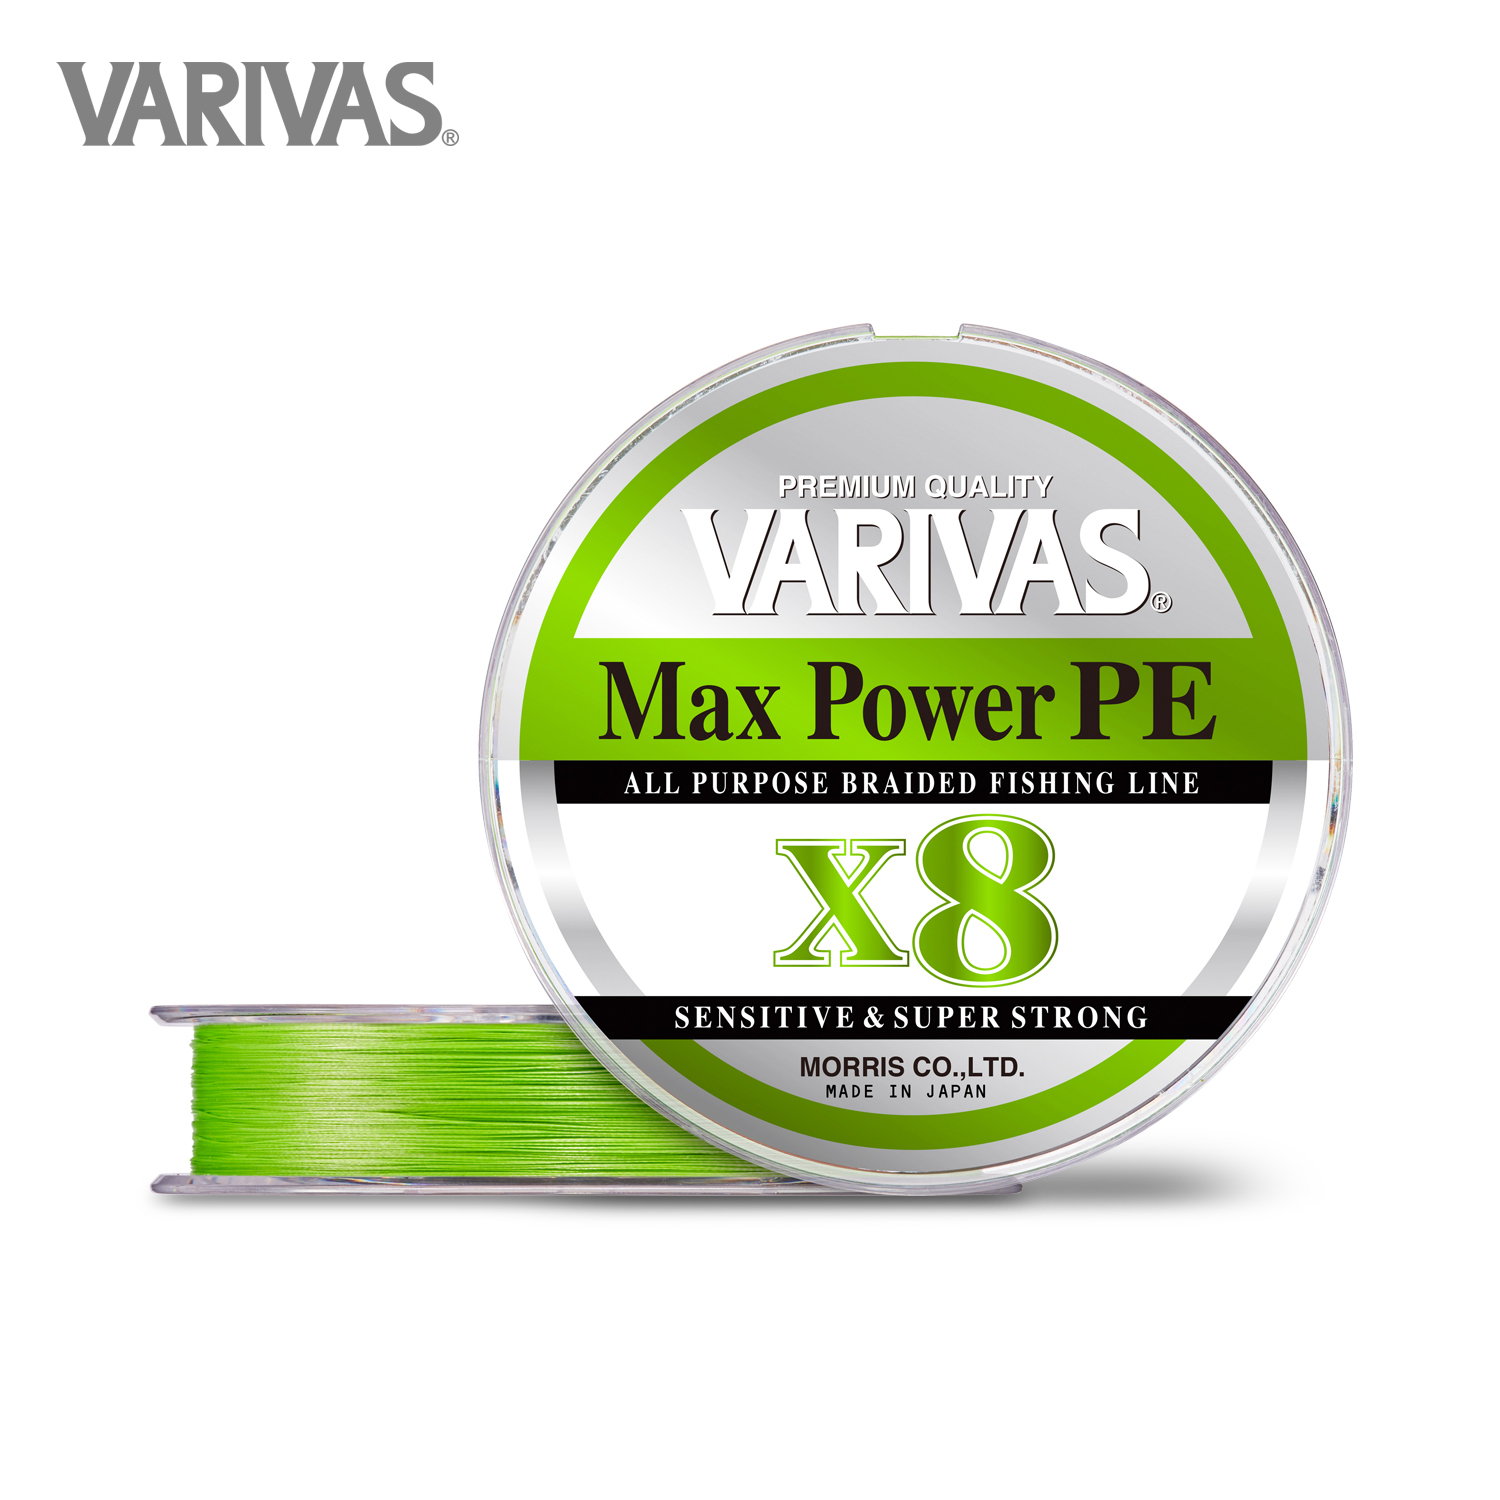 8579 Varivas P.E Line New Avani Max Power Casting X8 300m P.E 2.5 40lb 